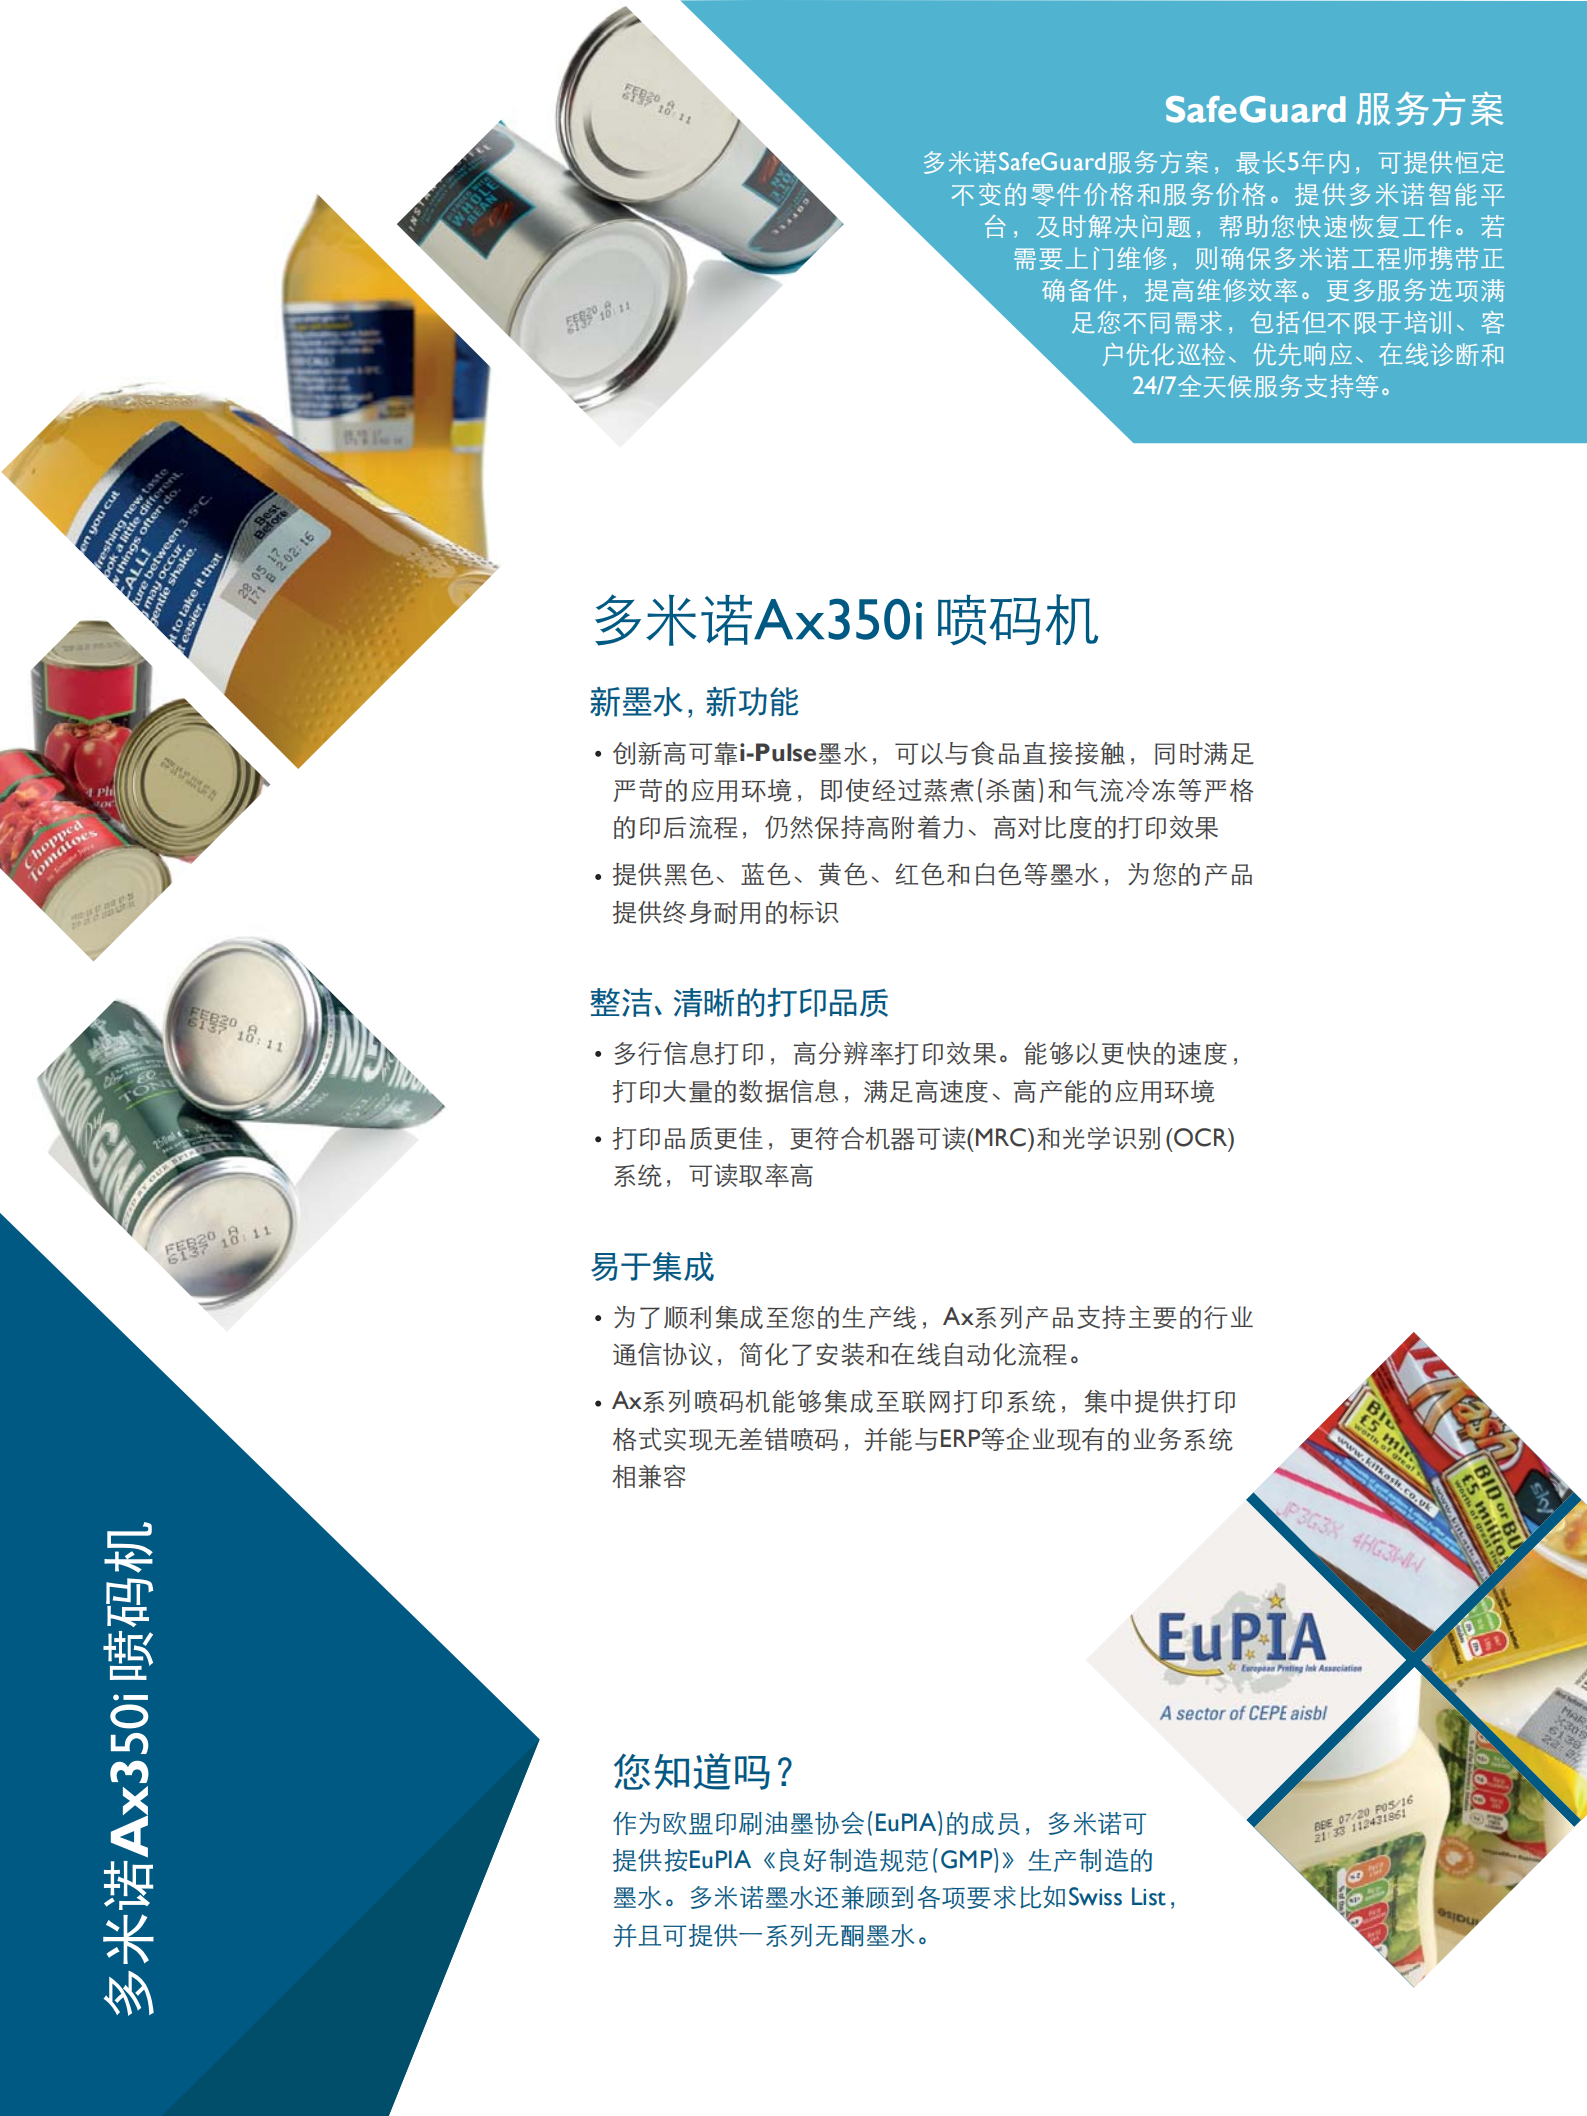 Brochure-CN-Ax350i_01.png